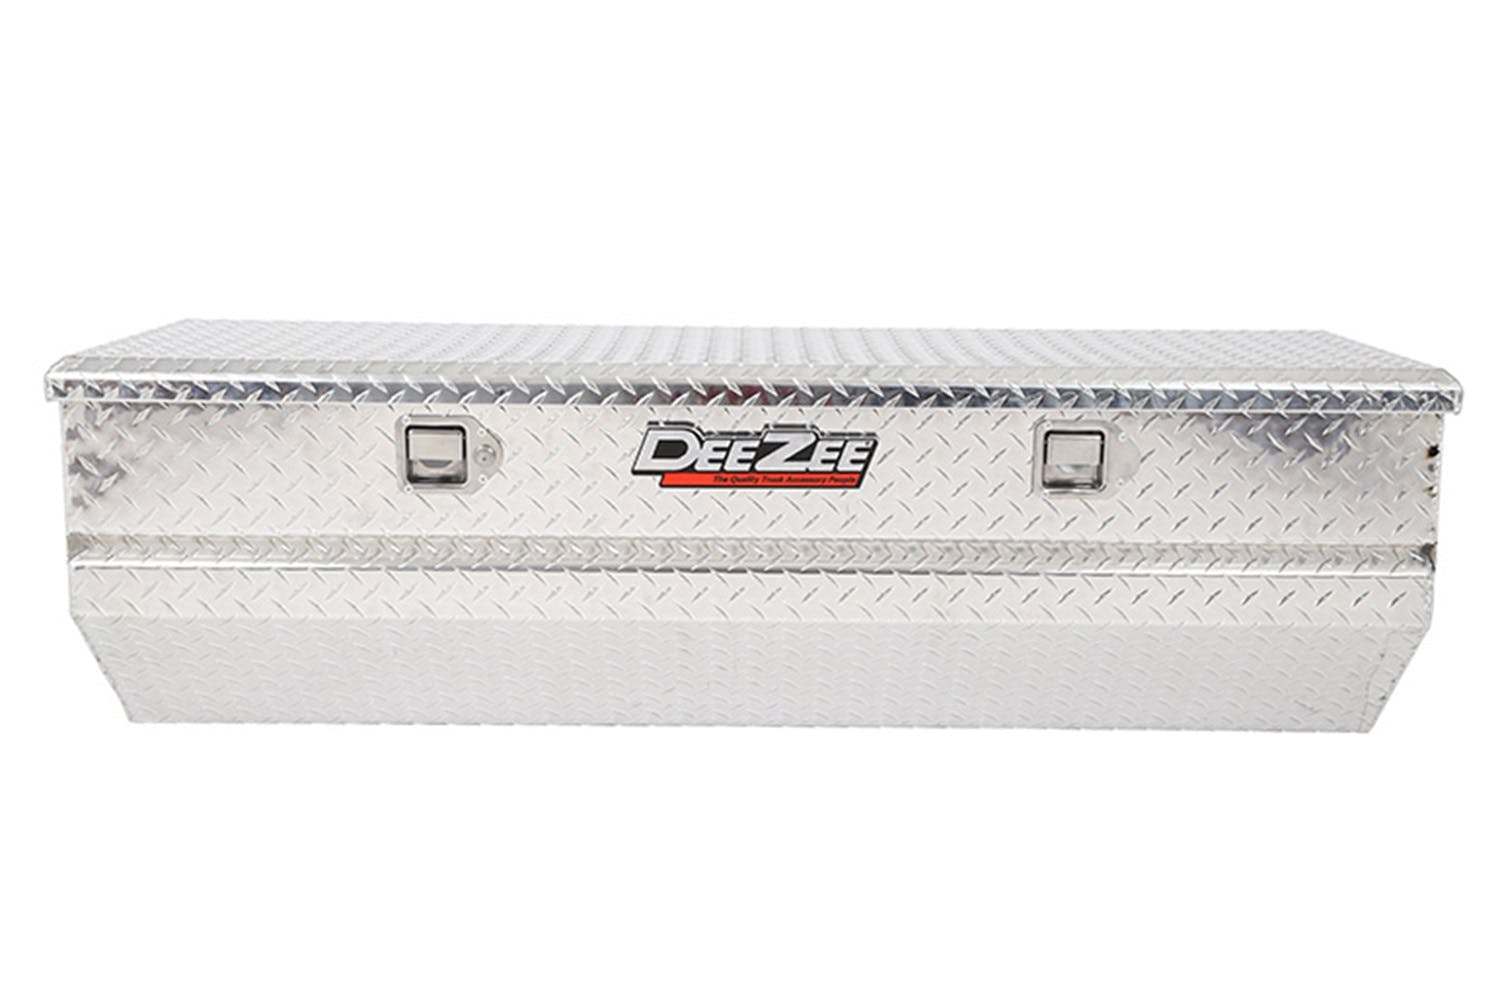 Dee Zee DZ8556 Tool Box - Red Chest BT Alum